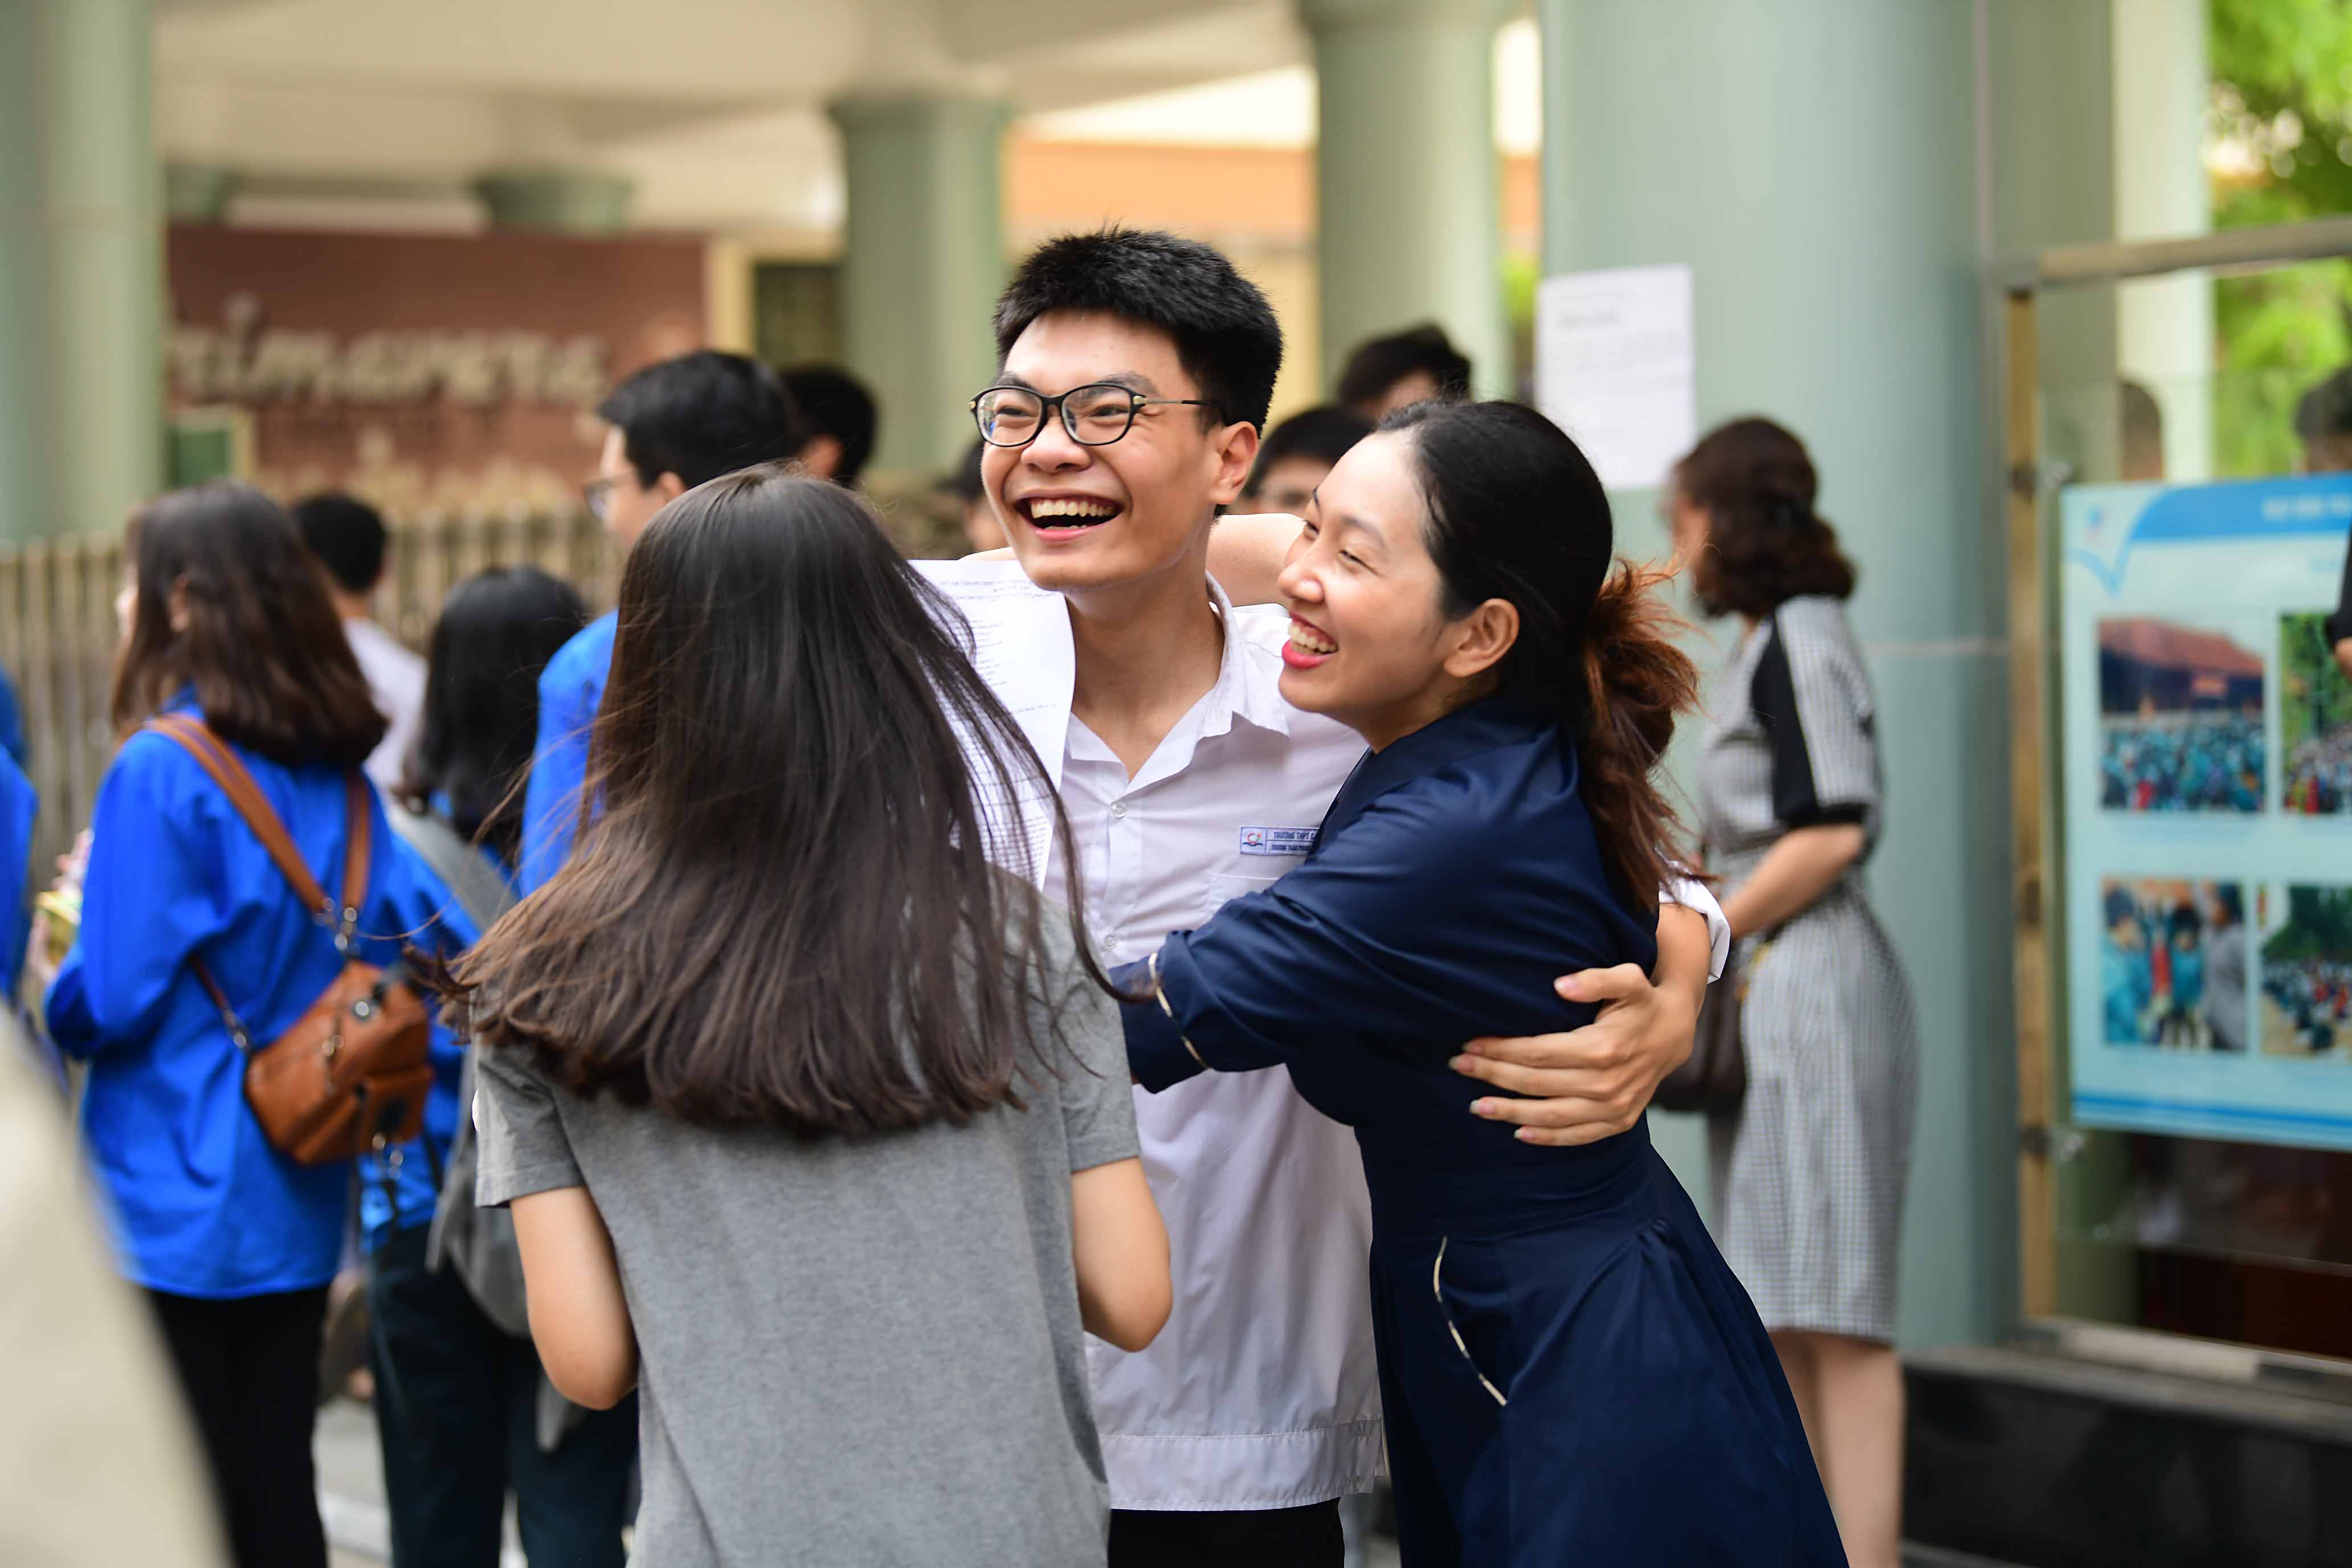 ĐH QG HN đã hoàn thành chấm thi trắc nghiệm THPT quốc gia 2019 cho hơn 74.000 học sinh ở Hà Nội.